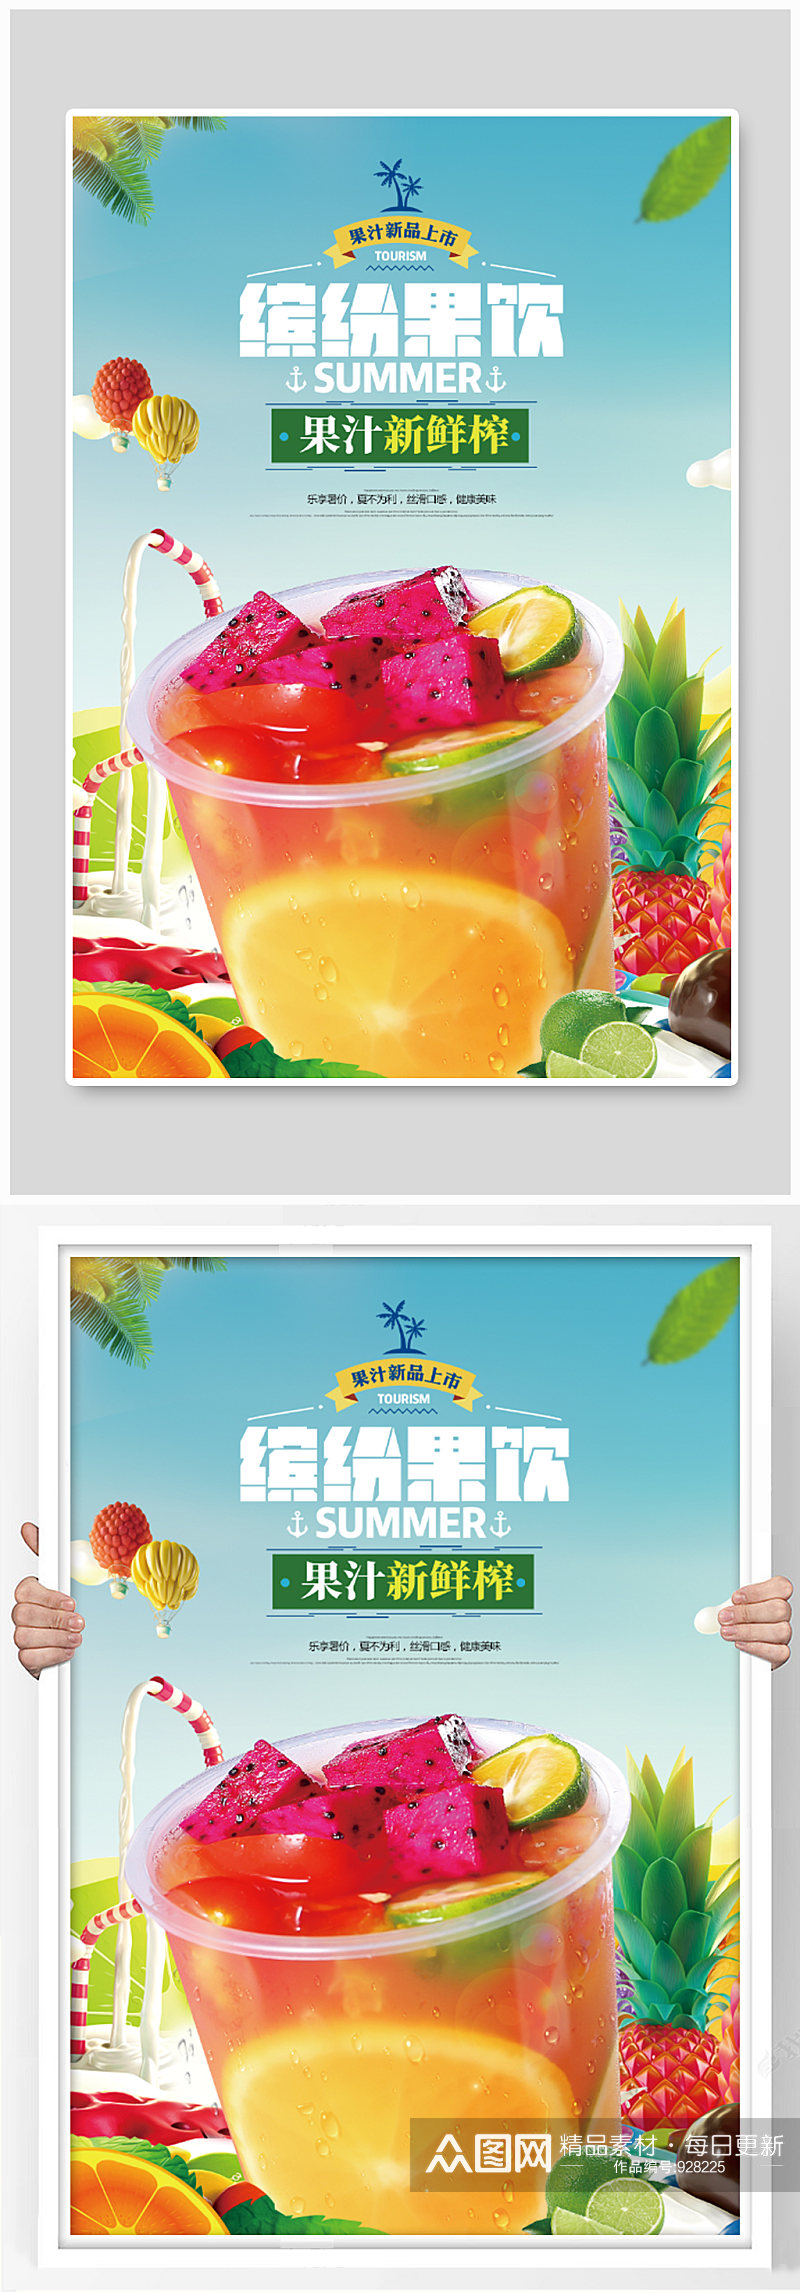 新鲜果汁海报设计素材